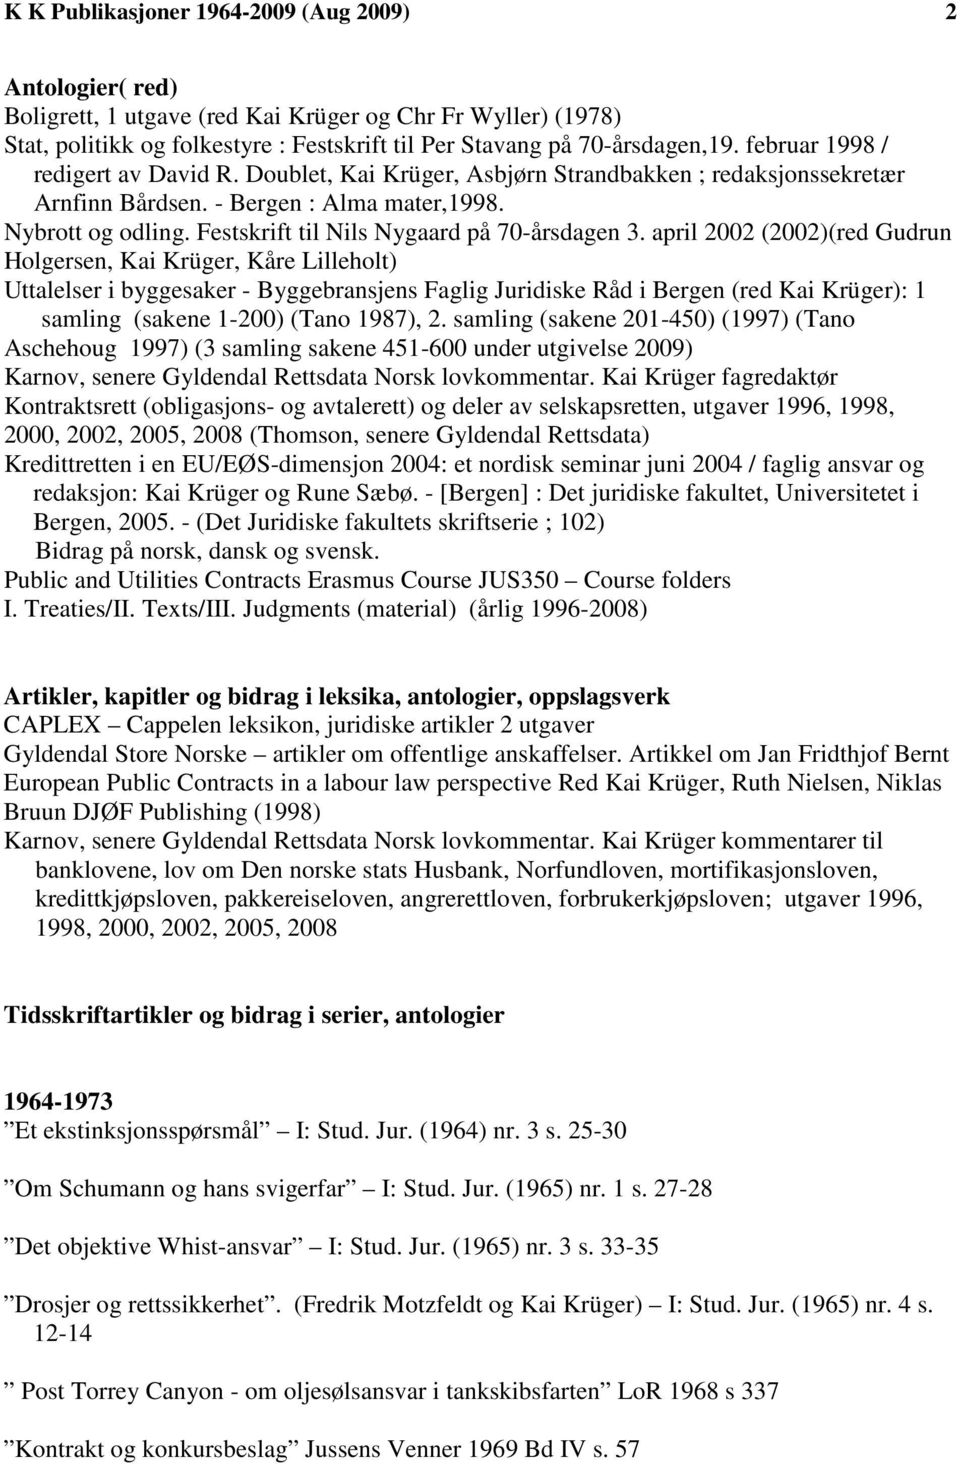 Festskrift til Nils Nygaard på 70-årsdagen 3.